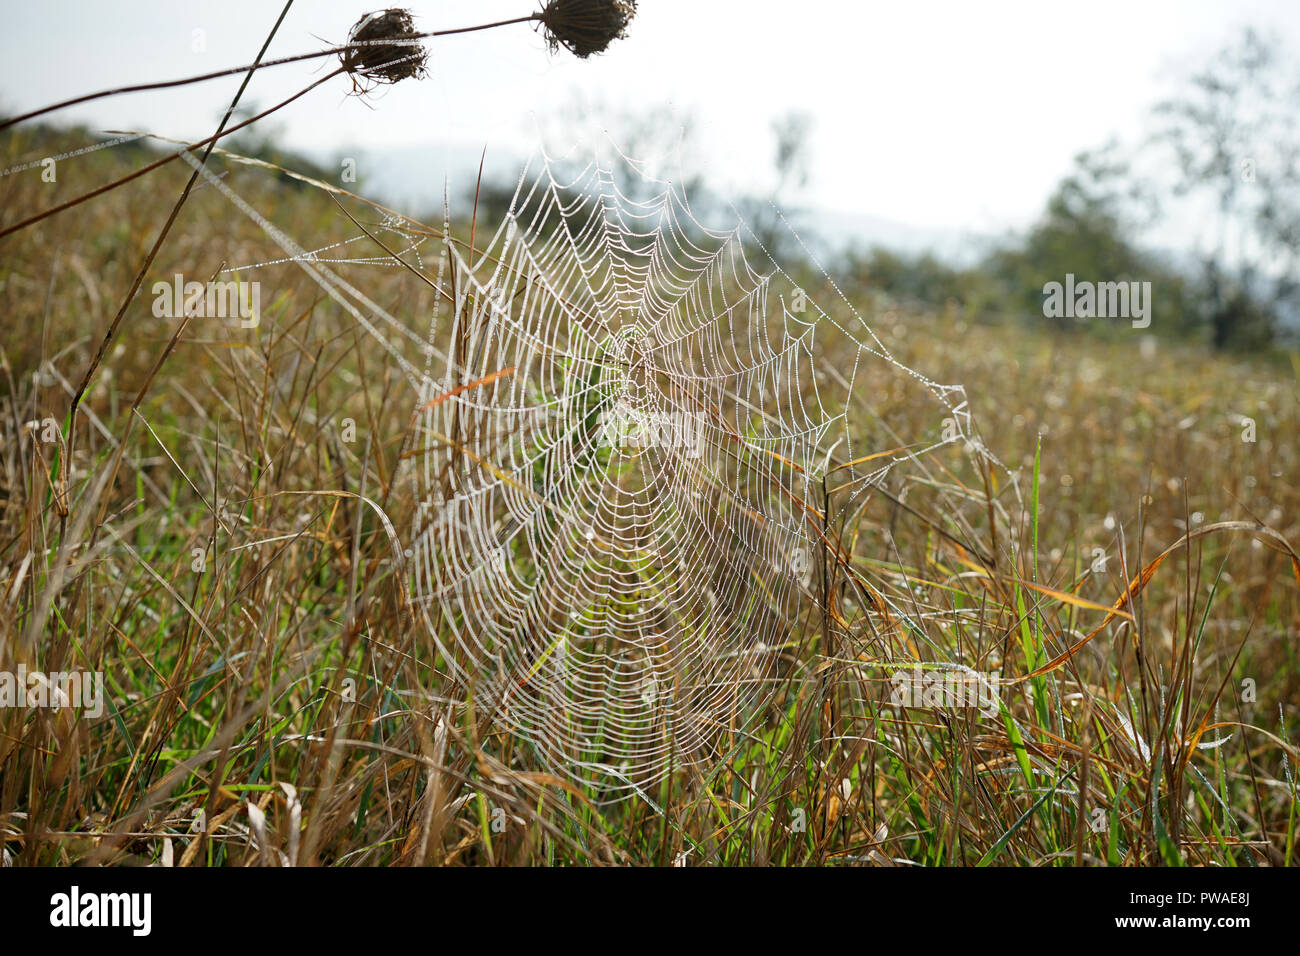 Spinnennetz mit Tautropfen, Wiese, Moseltal, Rheinland Pfalz, Deutschland Foto Stock